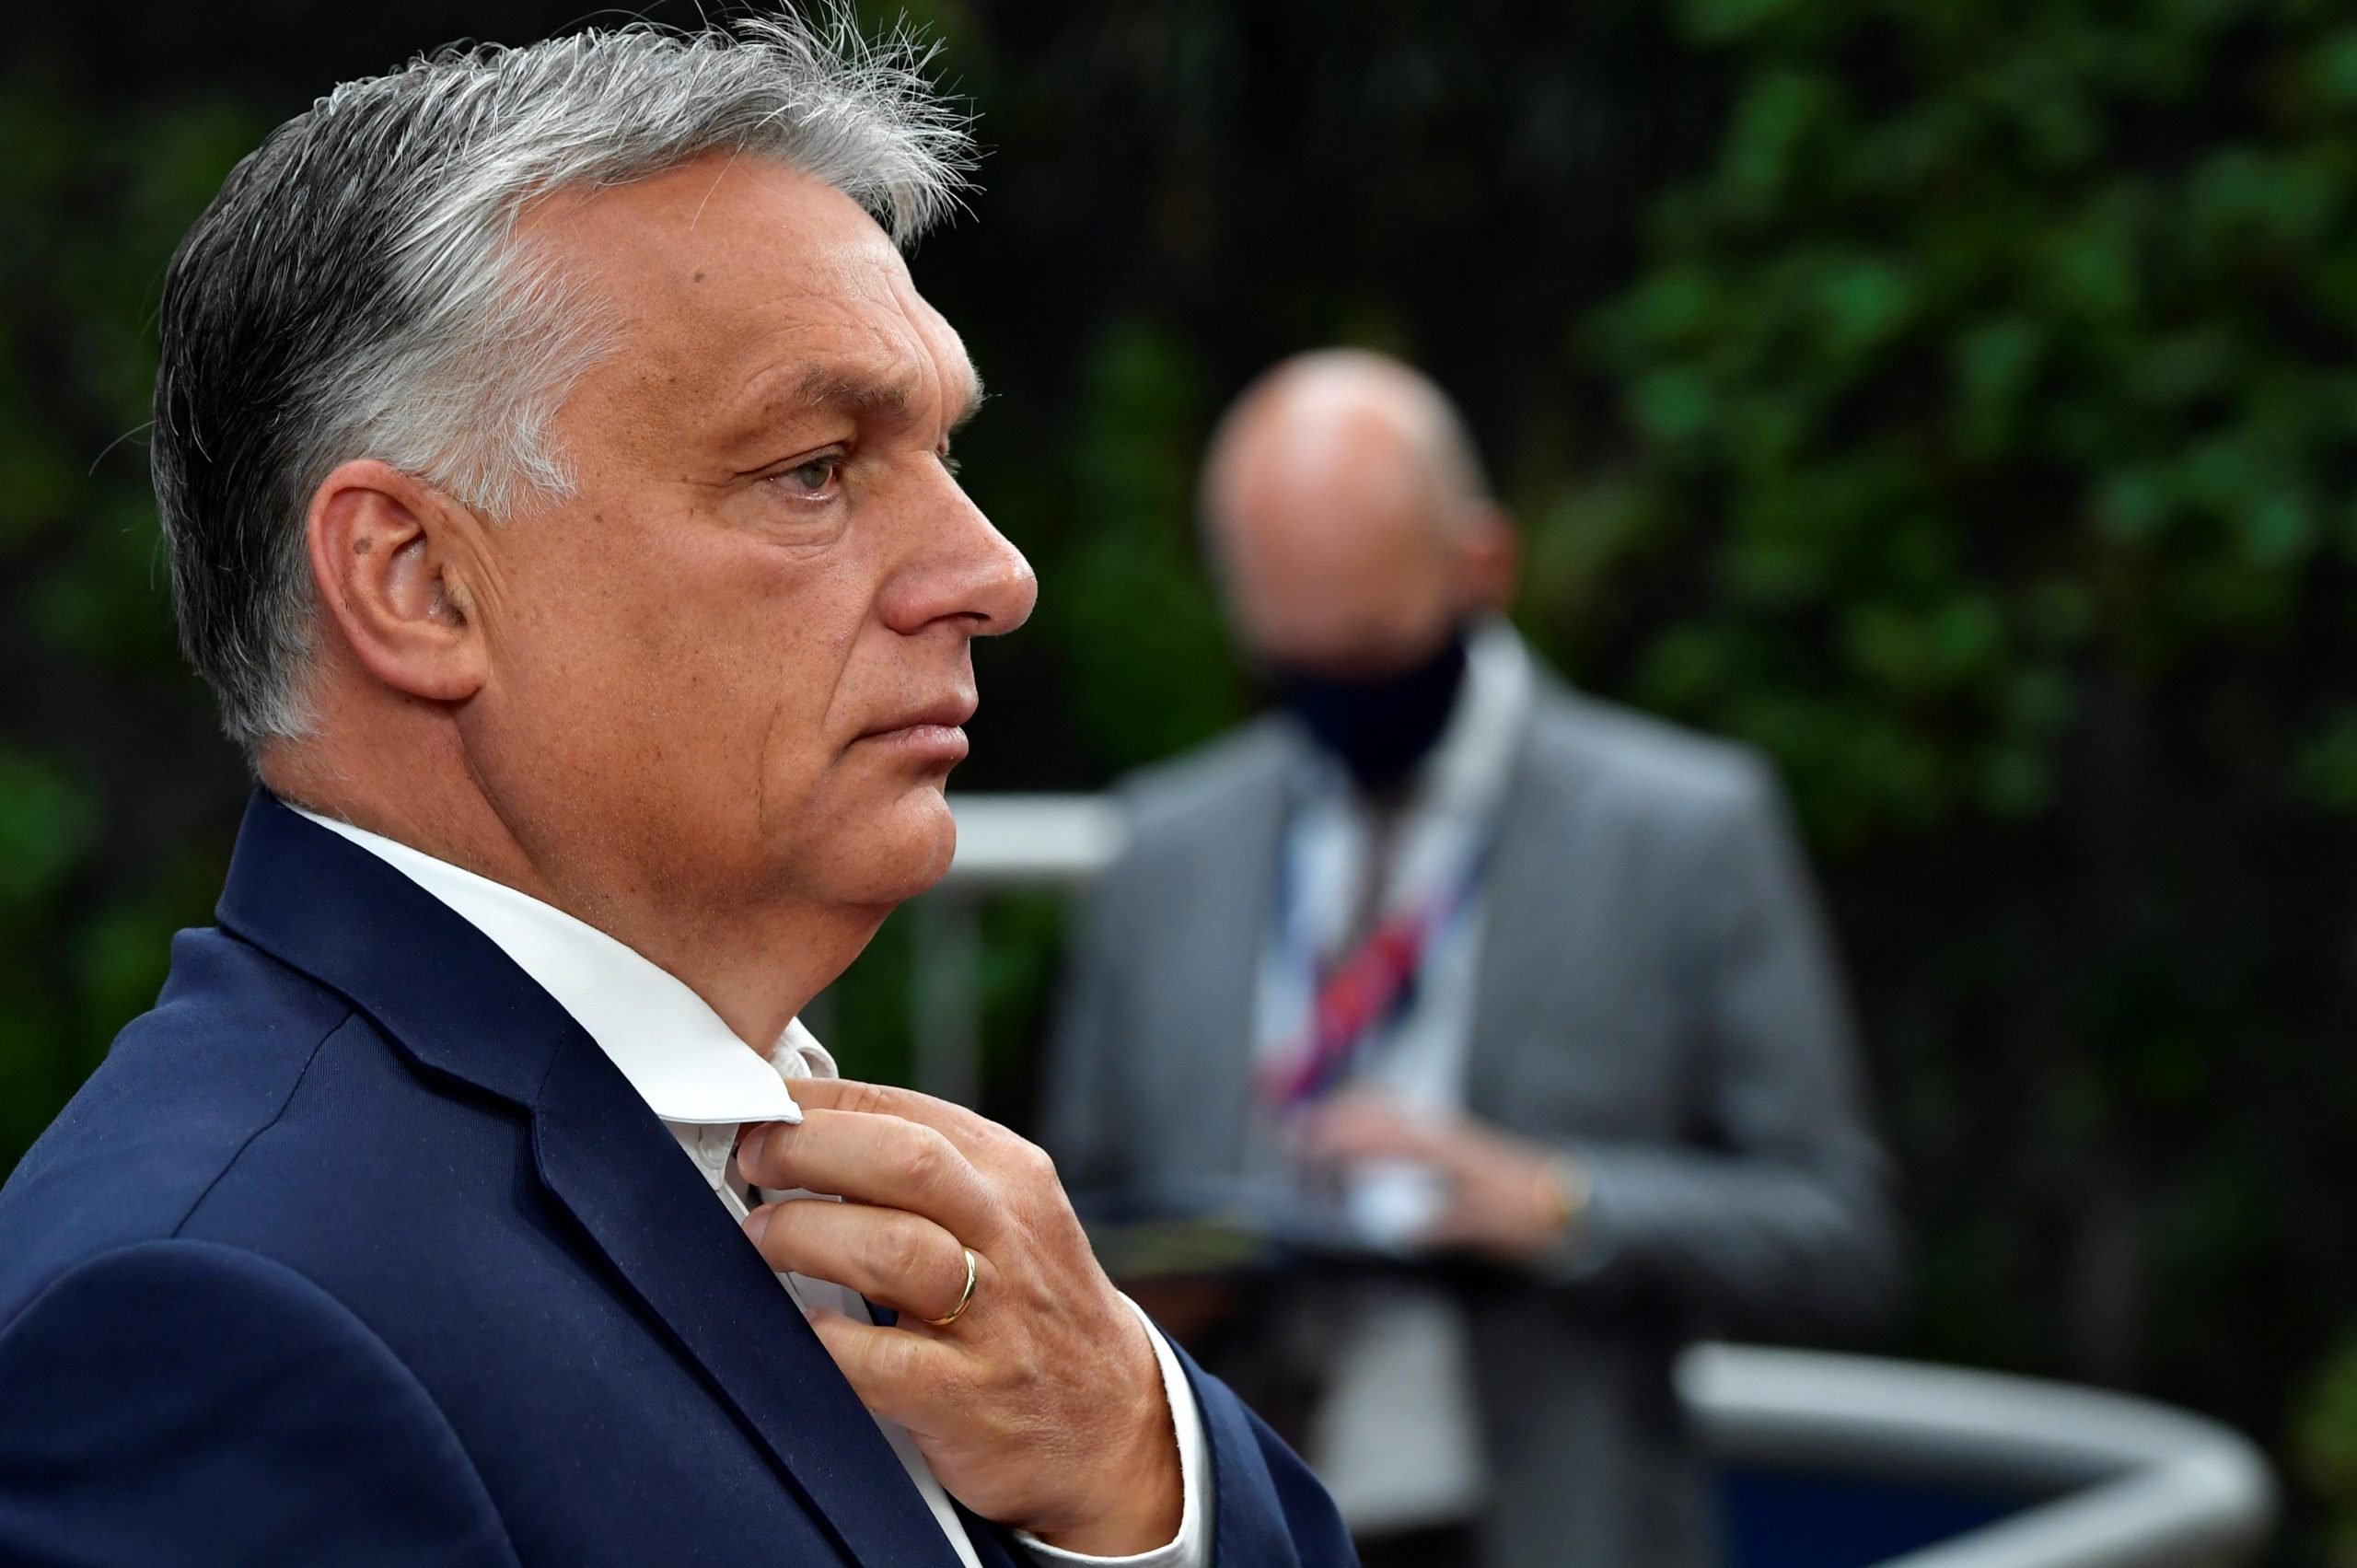 Viktor Orban, un nou gest controversat. A apărut cu fular cu Ungaria Mare la gât (VIDEO)